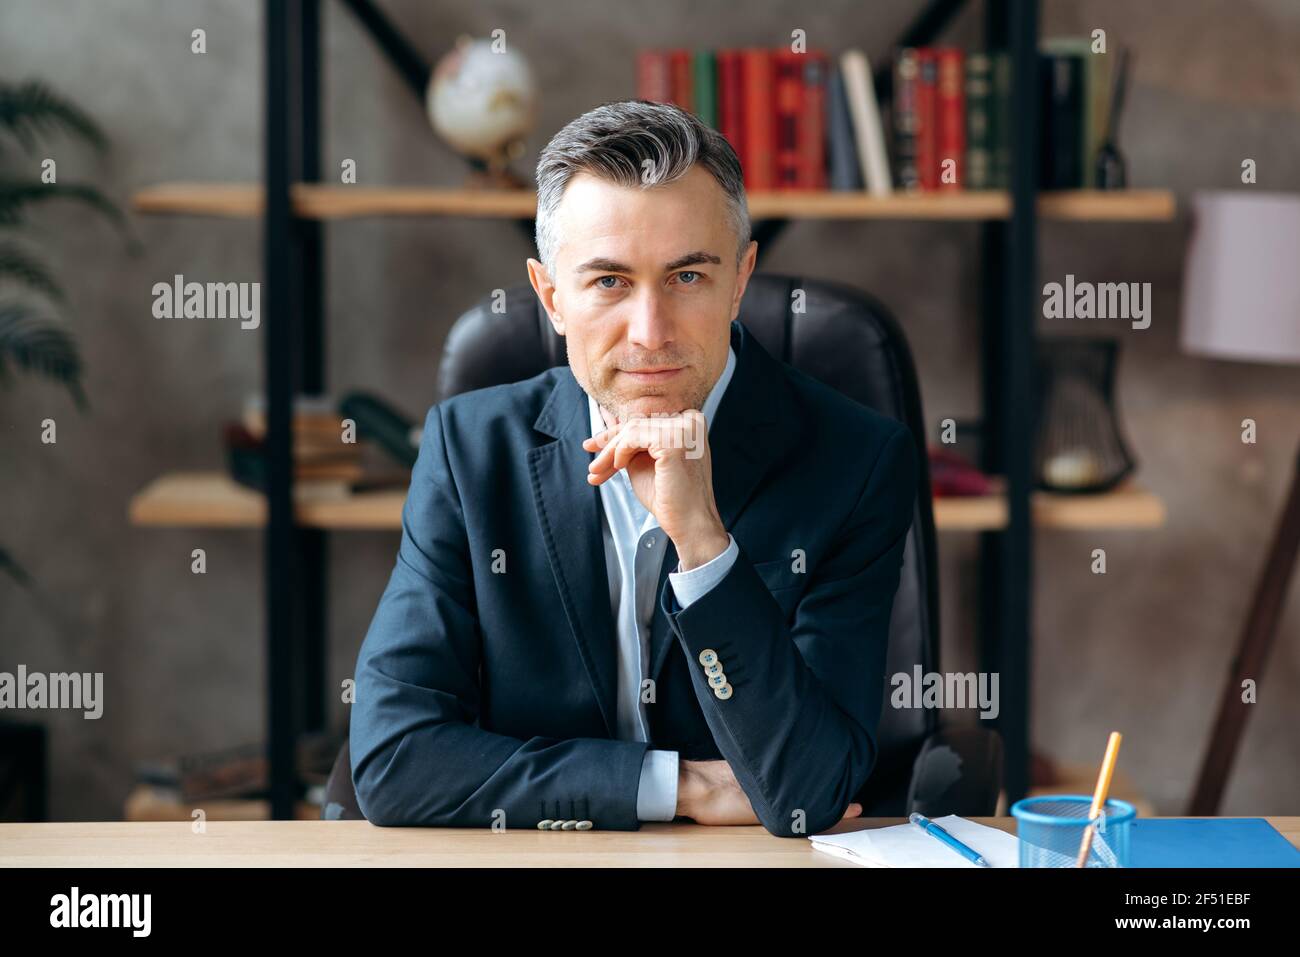 Ritratto di un influente caucasico successo CEO con capelli grigi, avvocato o leader aziendale, guarda la fotocamera, seduto in ufficio, vestito in un abito formale, sorrisi piacevoli Foto Stock